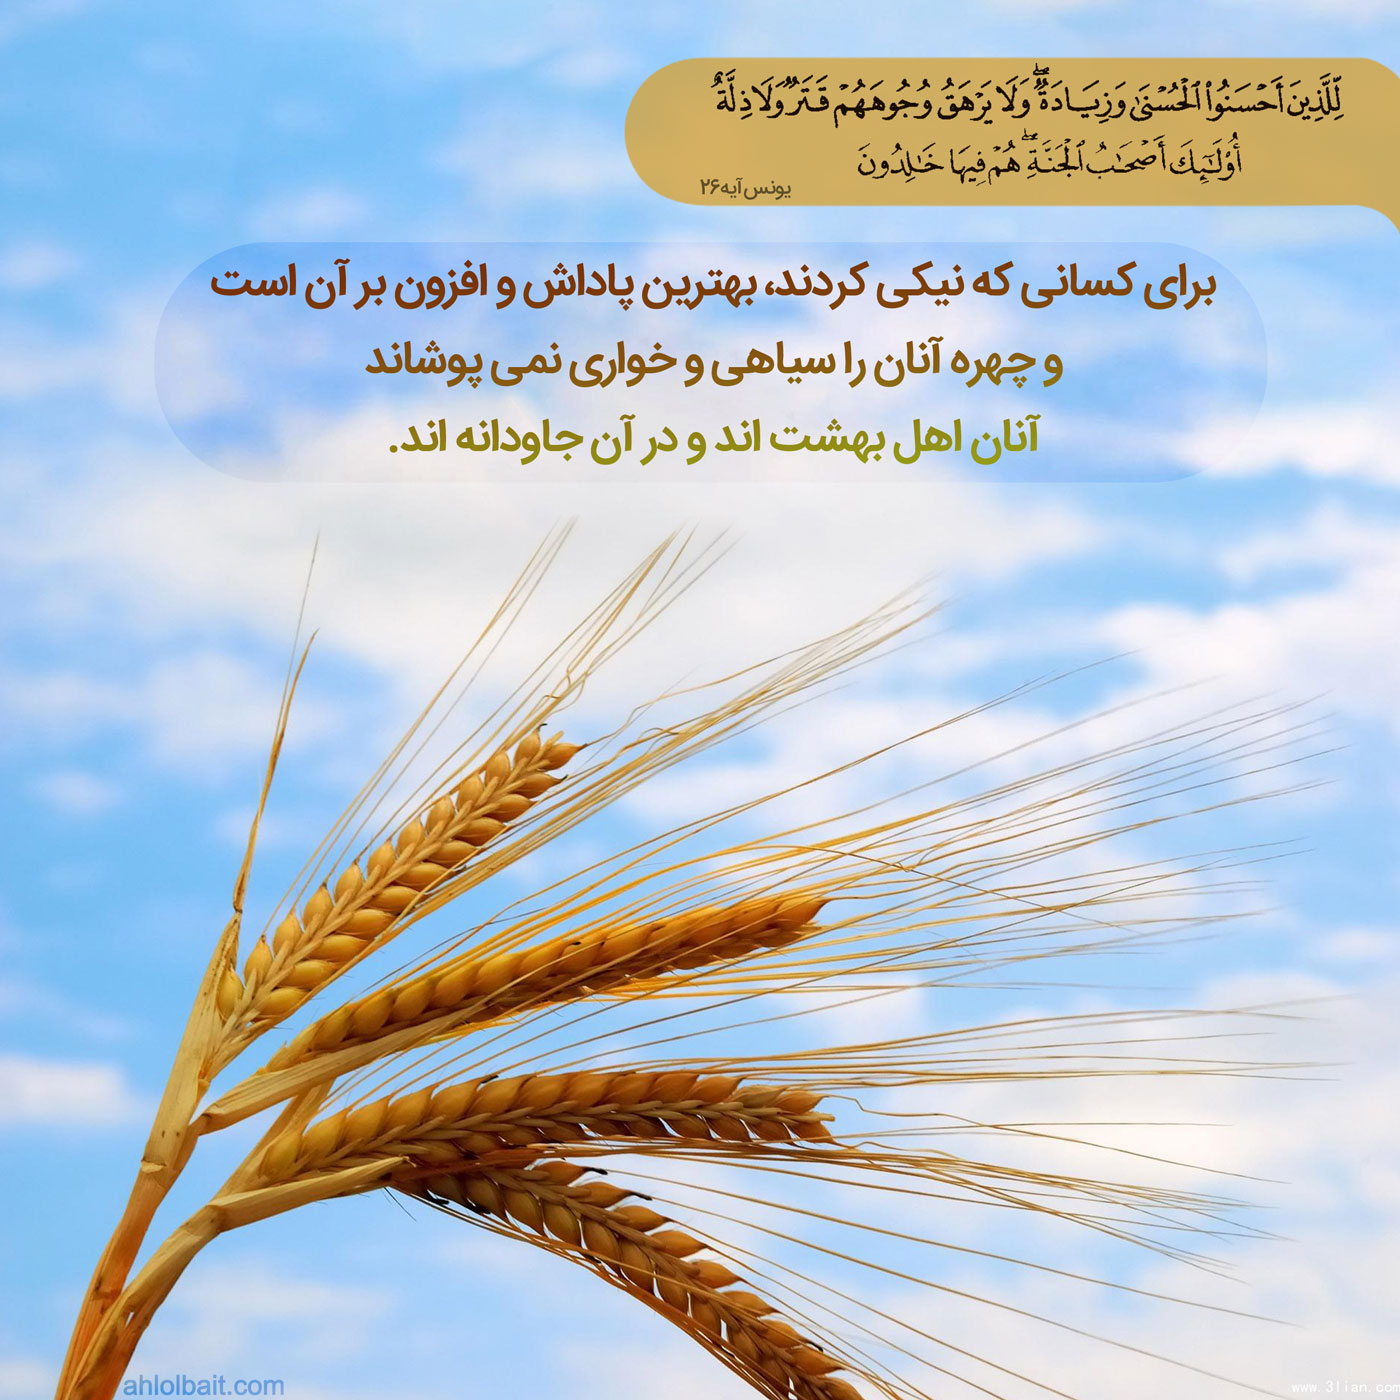 عکس نوشته قرآنی با عنوان "پاداش بیش از عمل" براساس آیه 26 سوره یونس